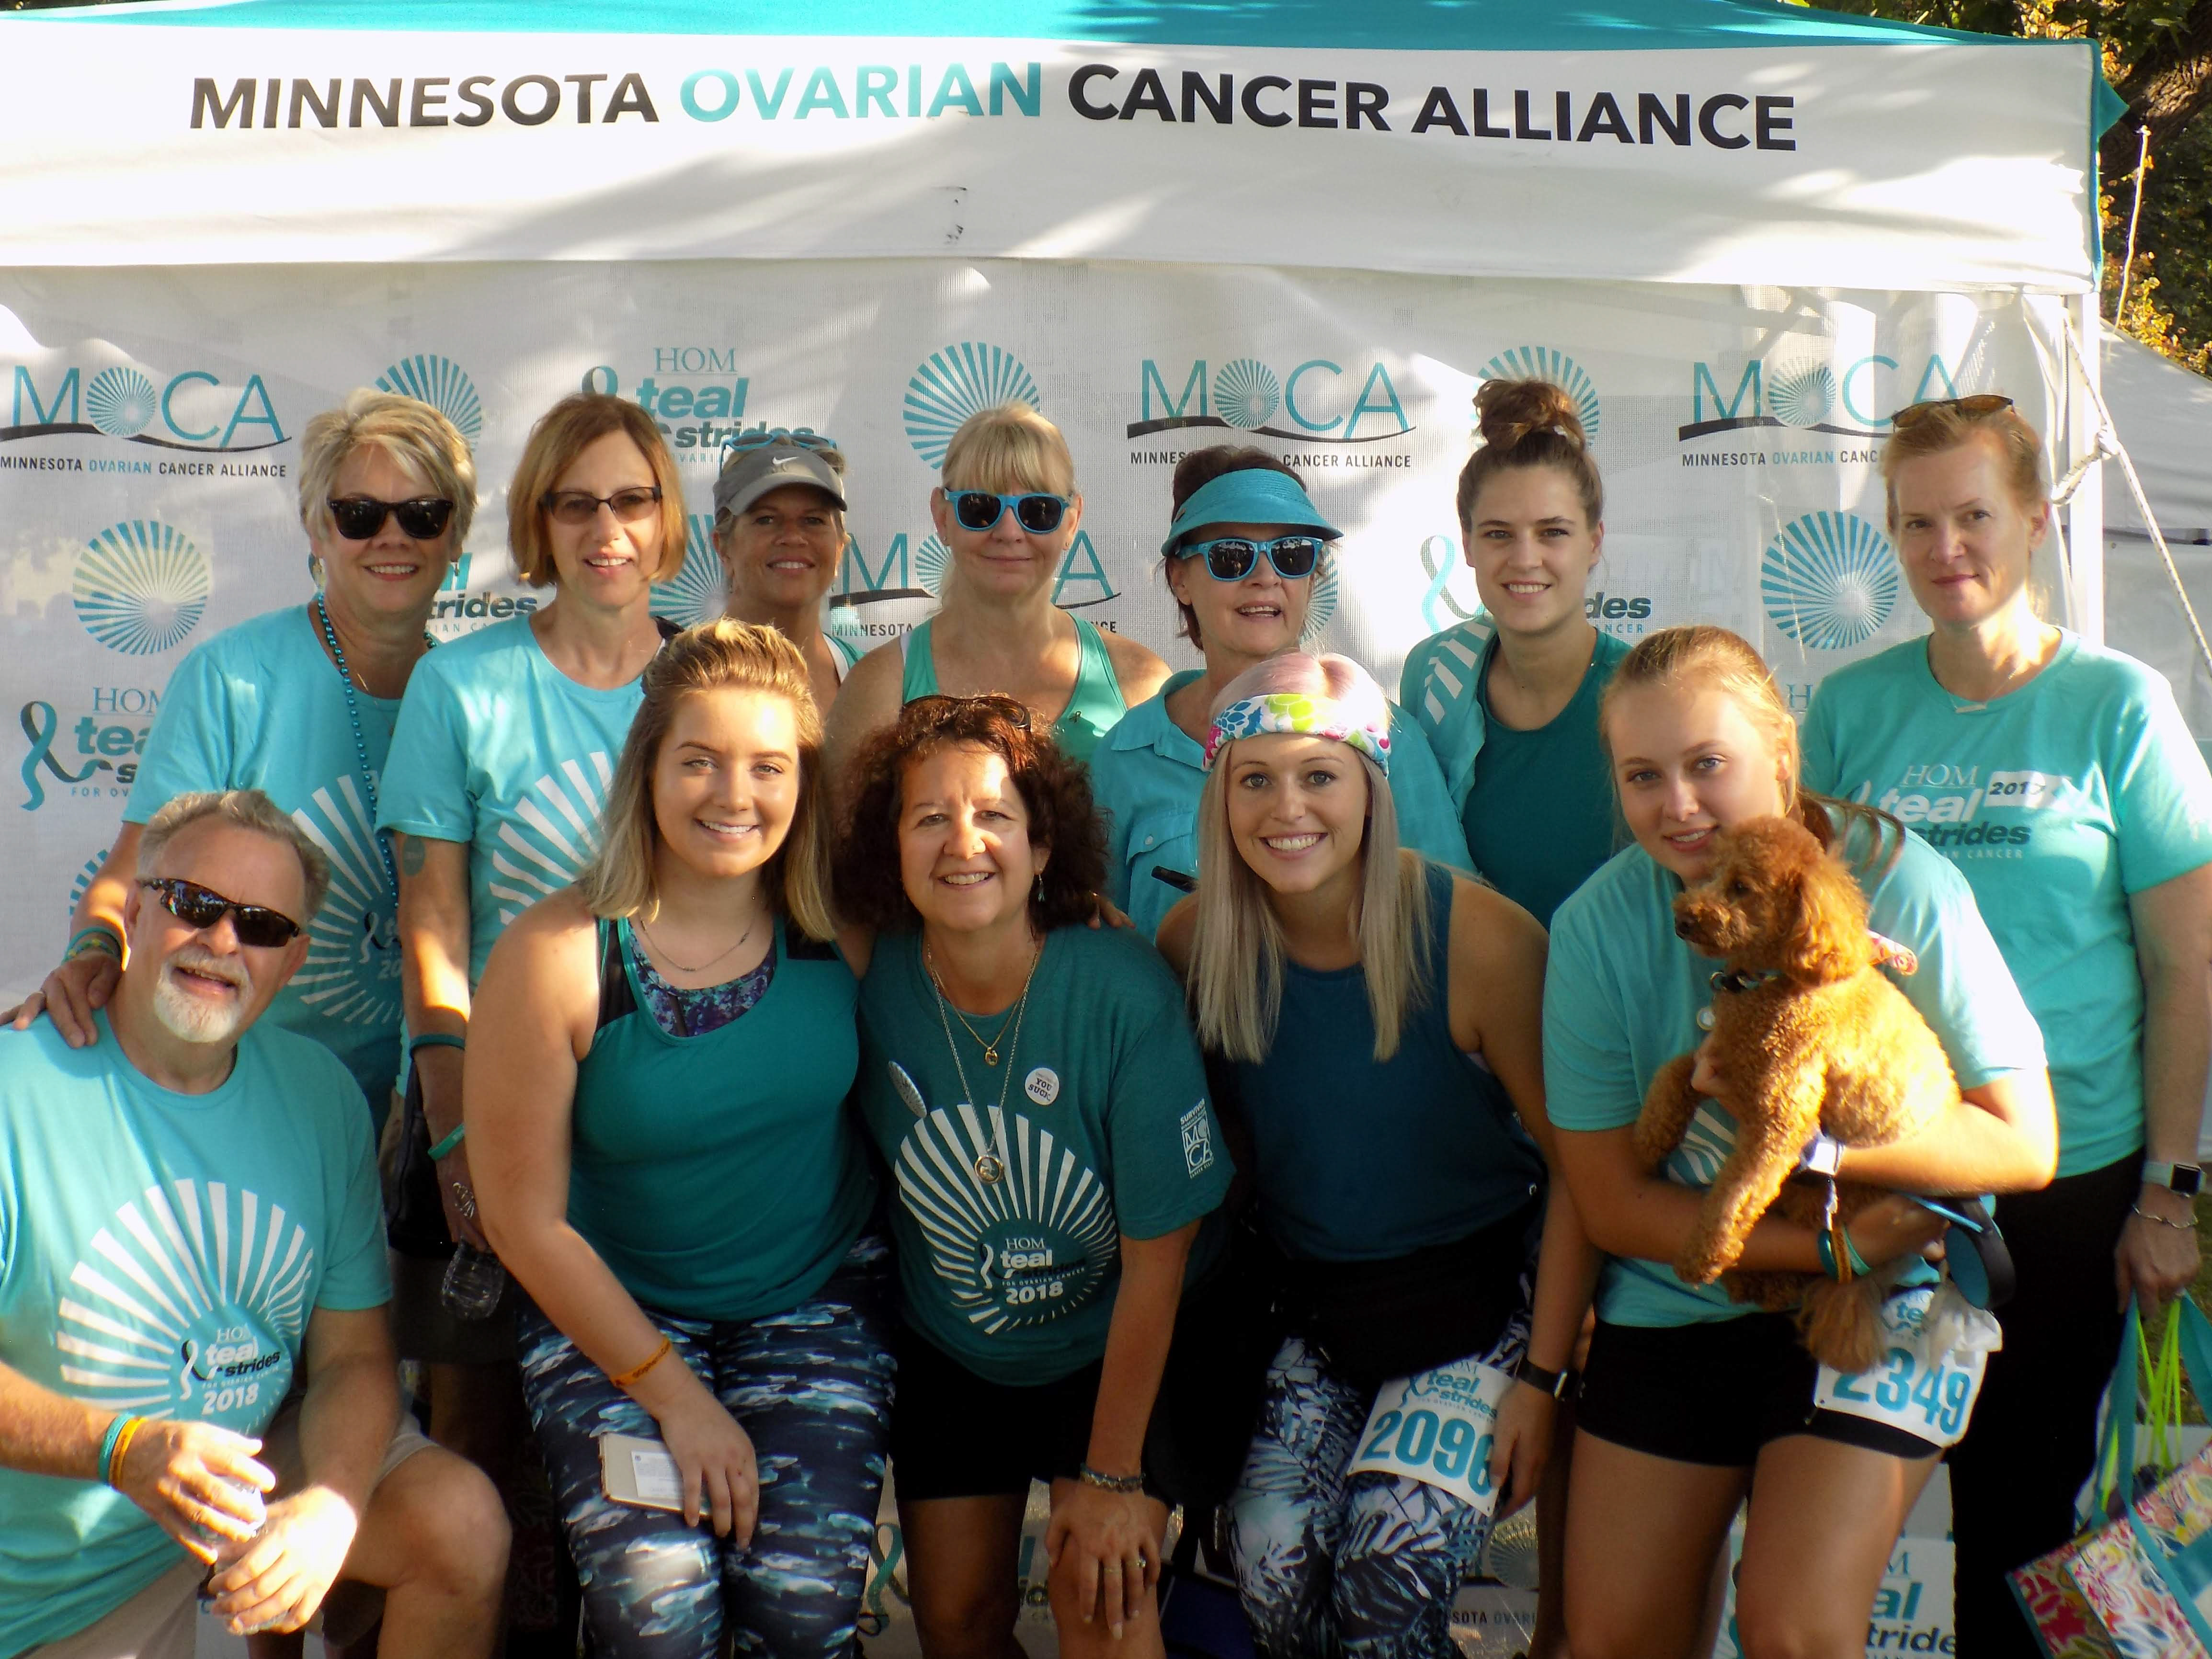 HOM Teal Strides for Ovarian Cancer